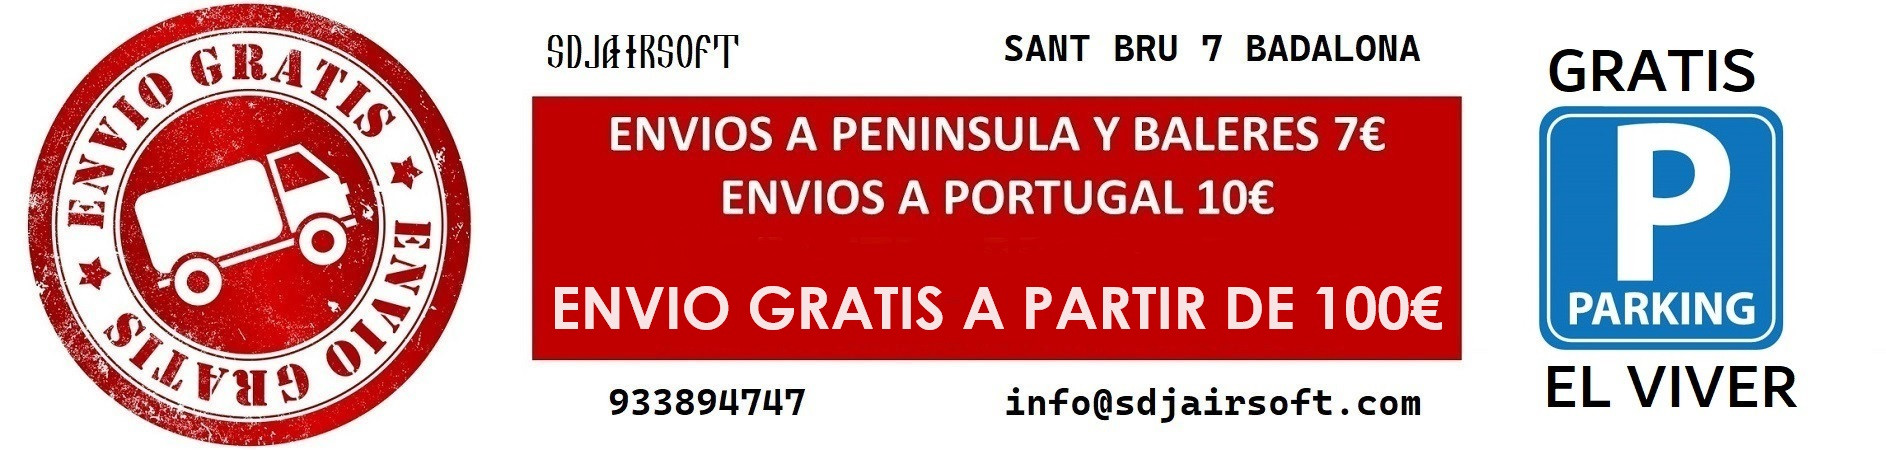 SDJairsoft ENVIO GRATIS A PARTIR DE 100€